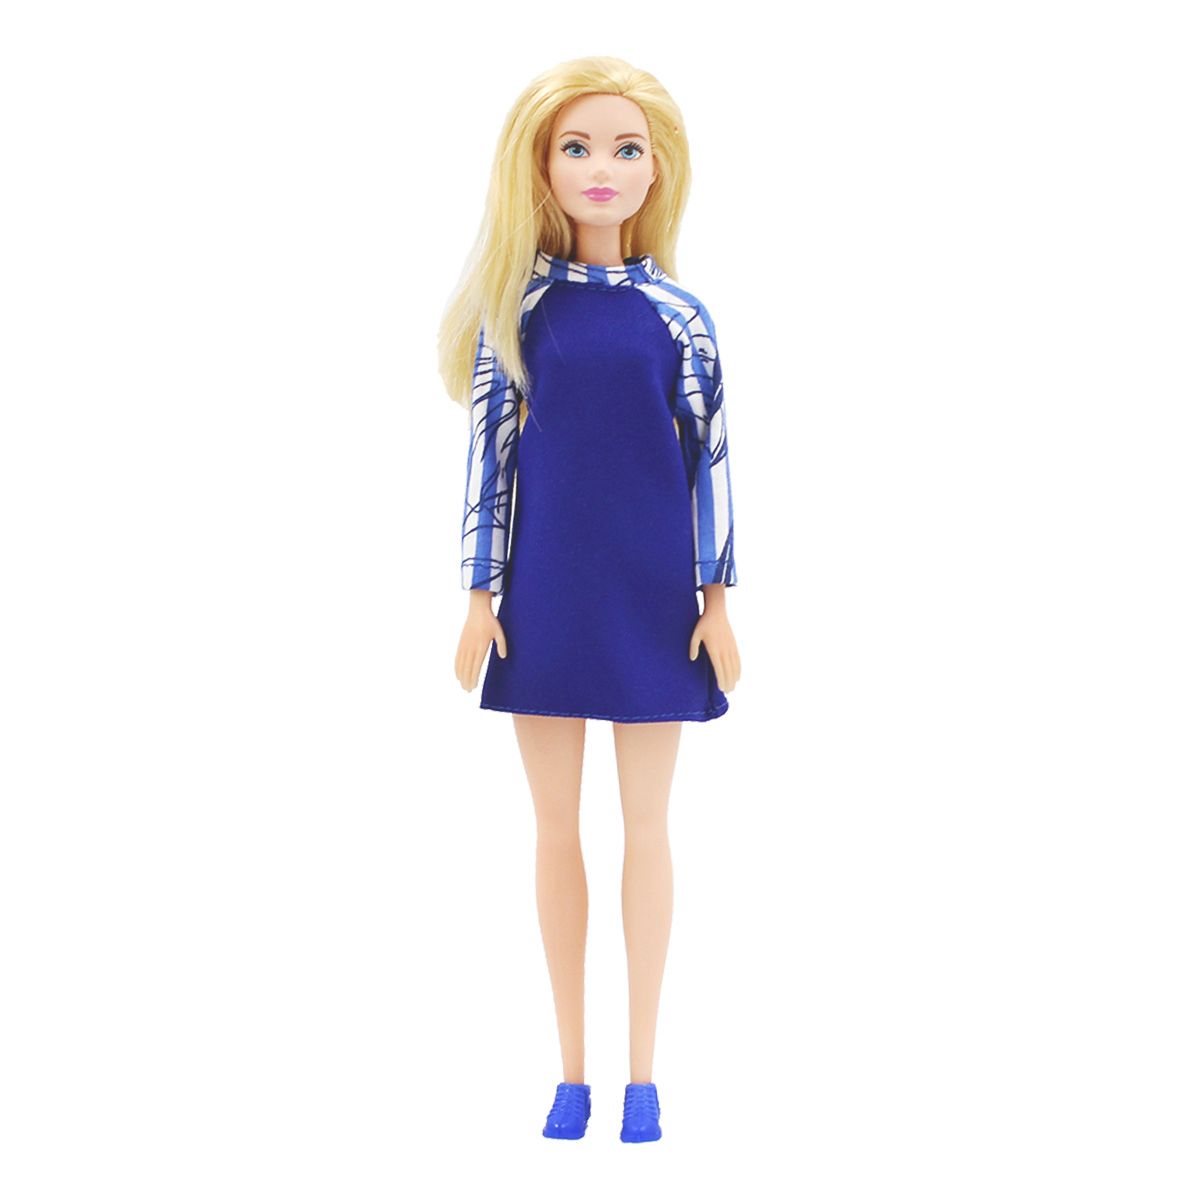 Одежда Dolls Accessories для Барби и кукол ростом 29 см Волны